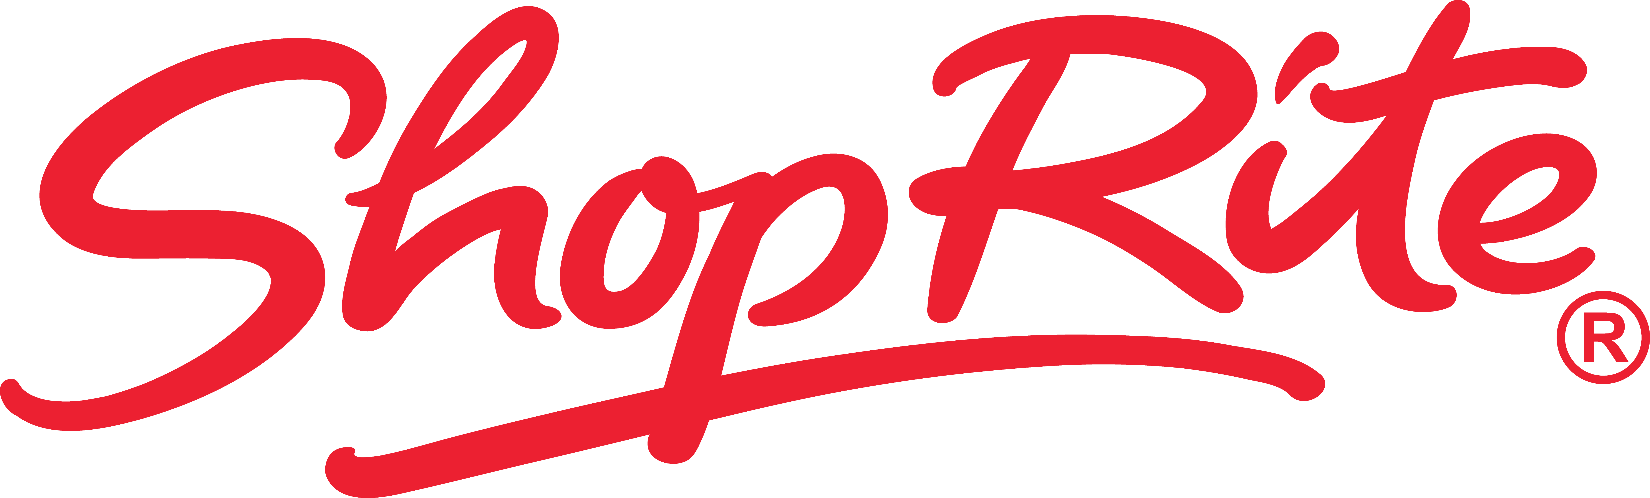 ShopRite - Logo